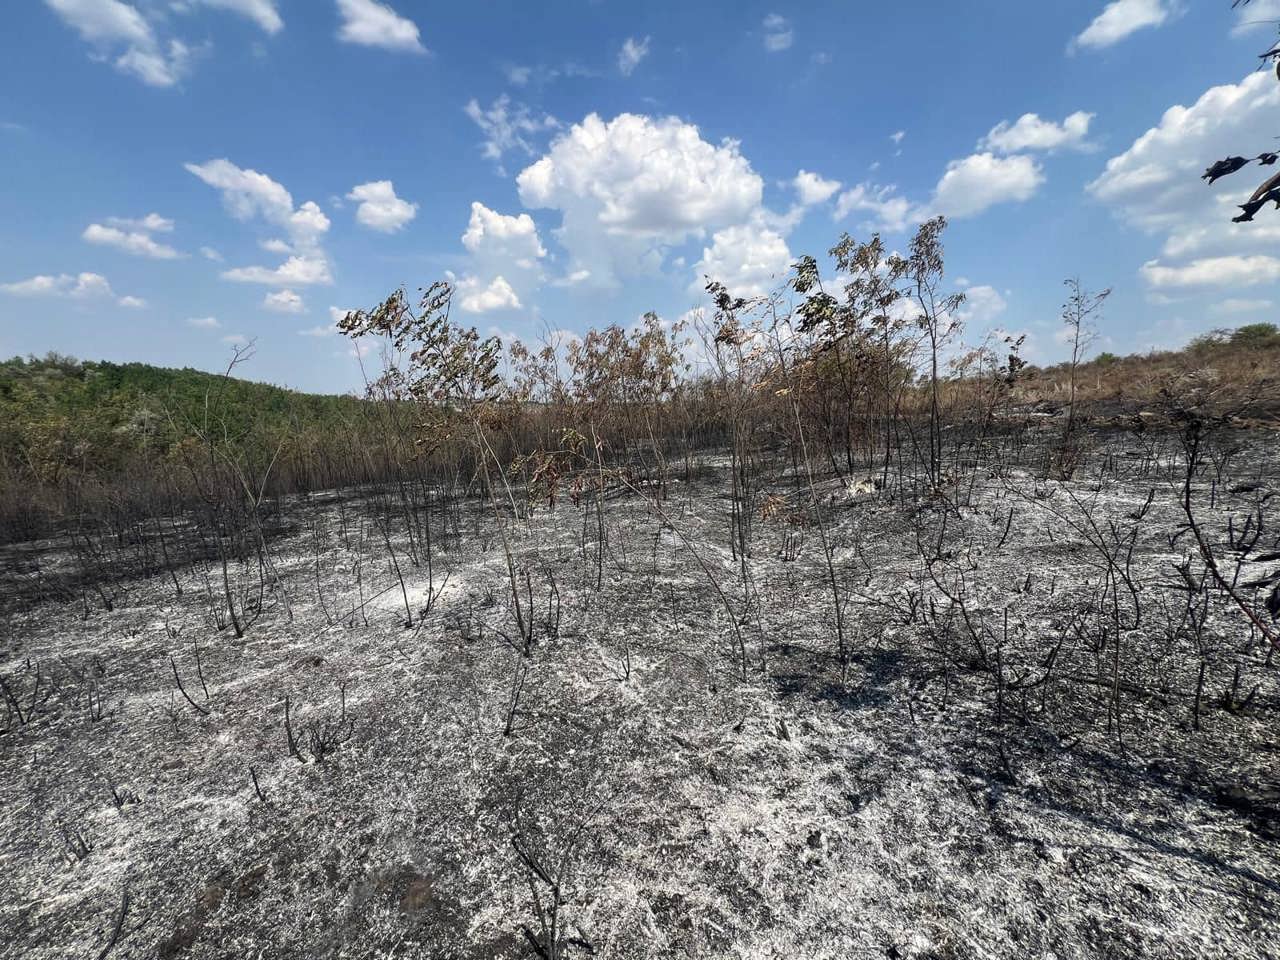 Peste 12 hectare de pădure, afectate în incendiul din Cahul. Ministerul Mediului: Va fi nevoie de șapte ani pentru a-și reveni pădurea